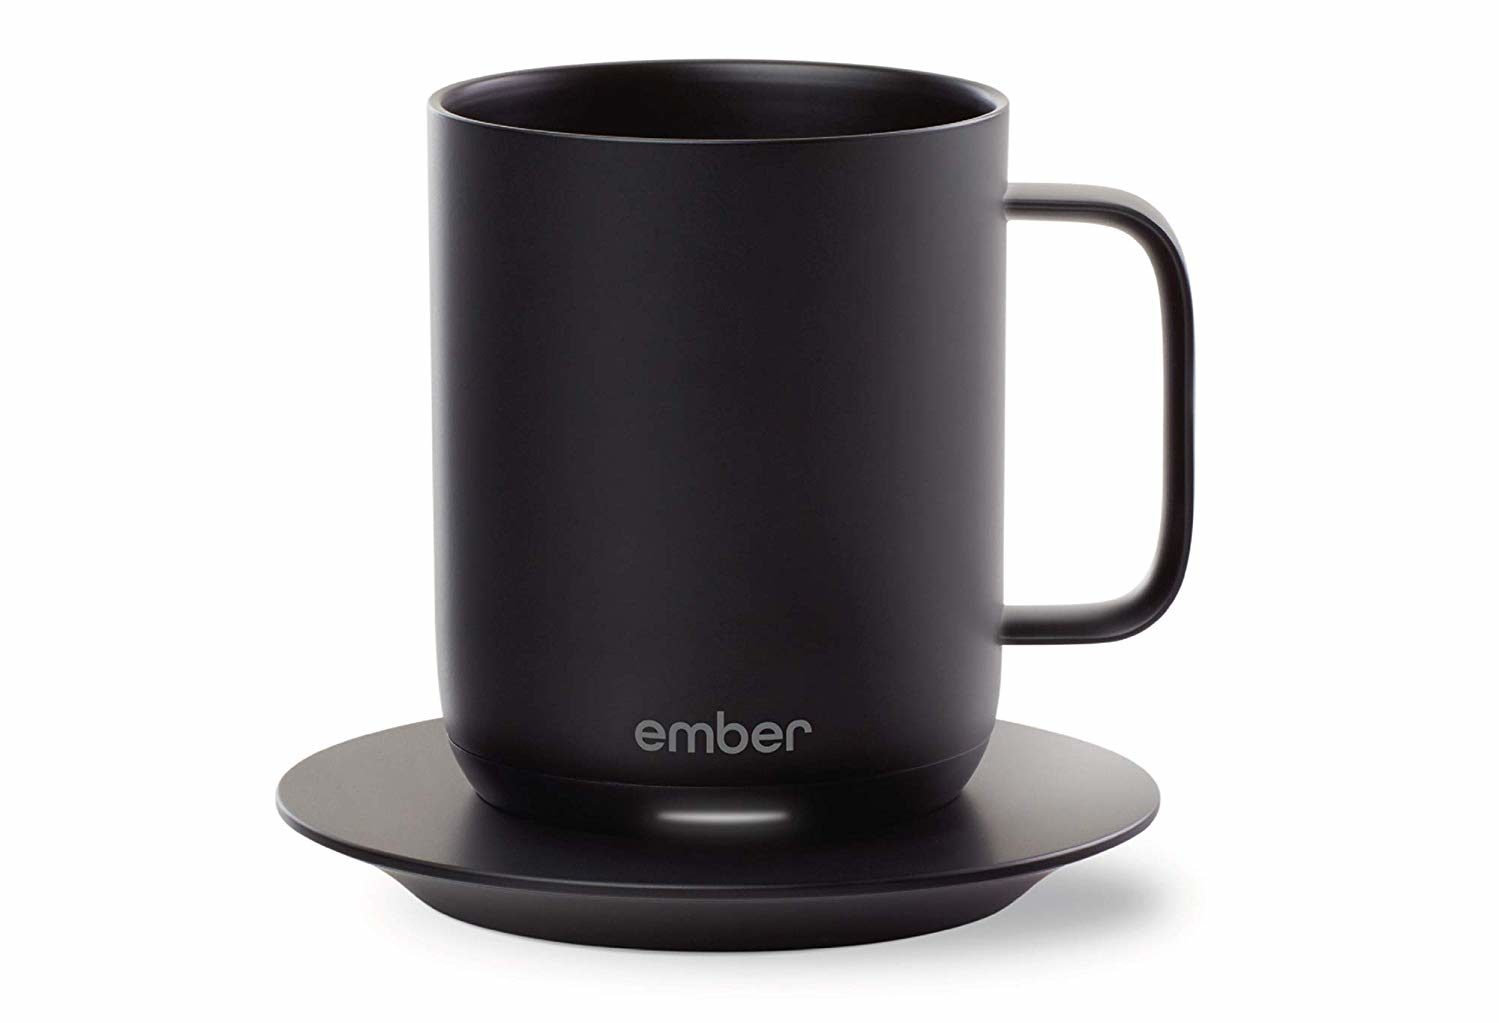 Top Tech Gift Women/Men 2022: Ember Temp Control Coffee Mug 2022